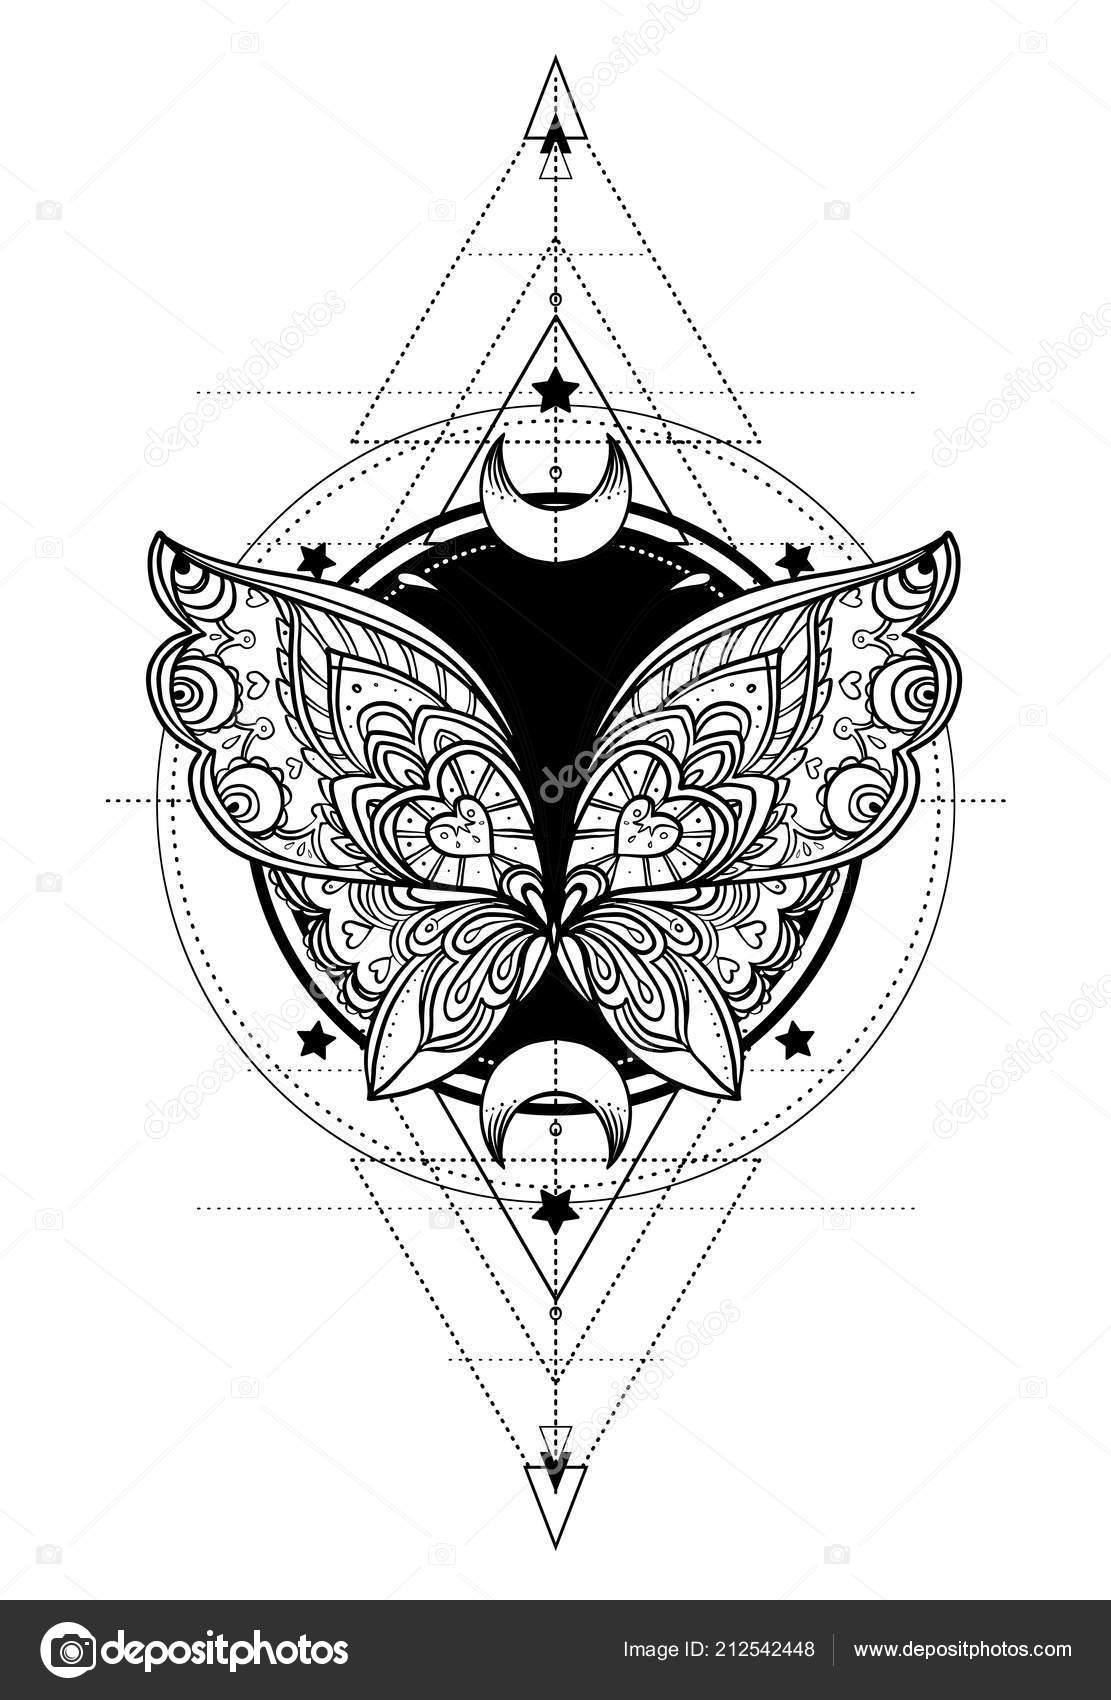 luna moth with eye tattooTikTok Search